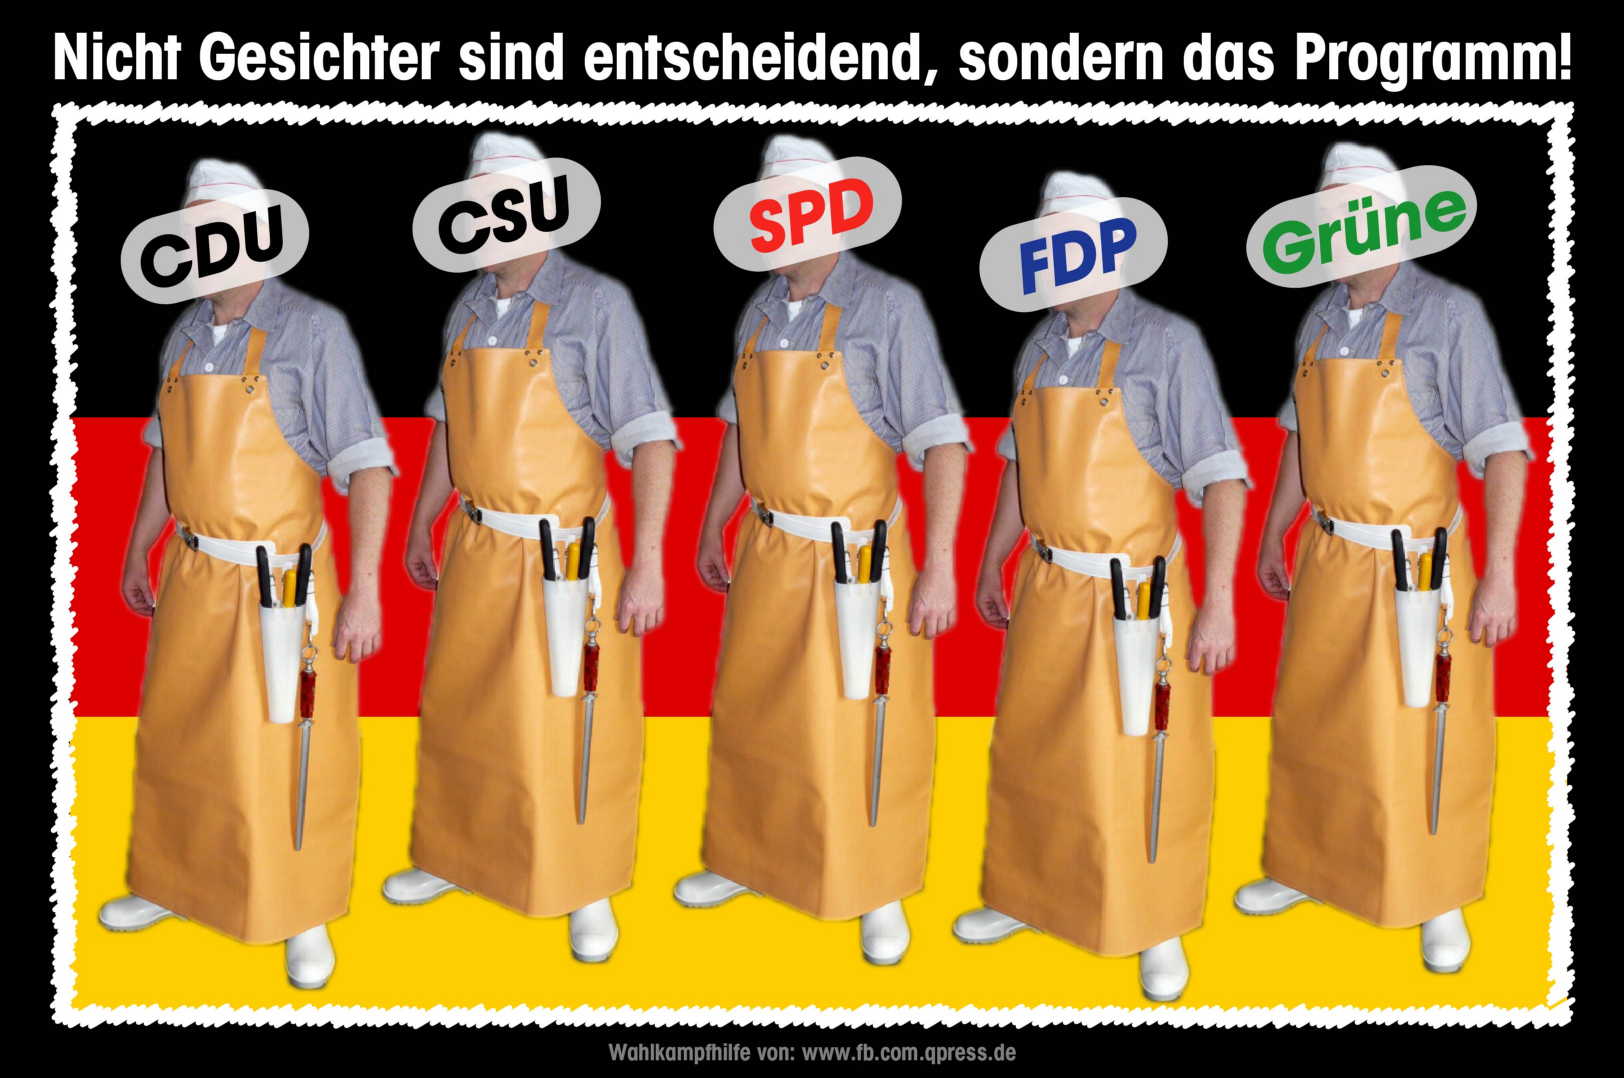 Bundestagswahl Die Schlachter Parteien CDU CSU SPD FDP DIE GRUENEN